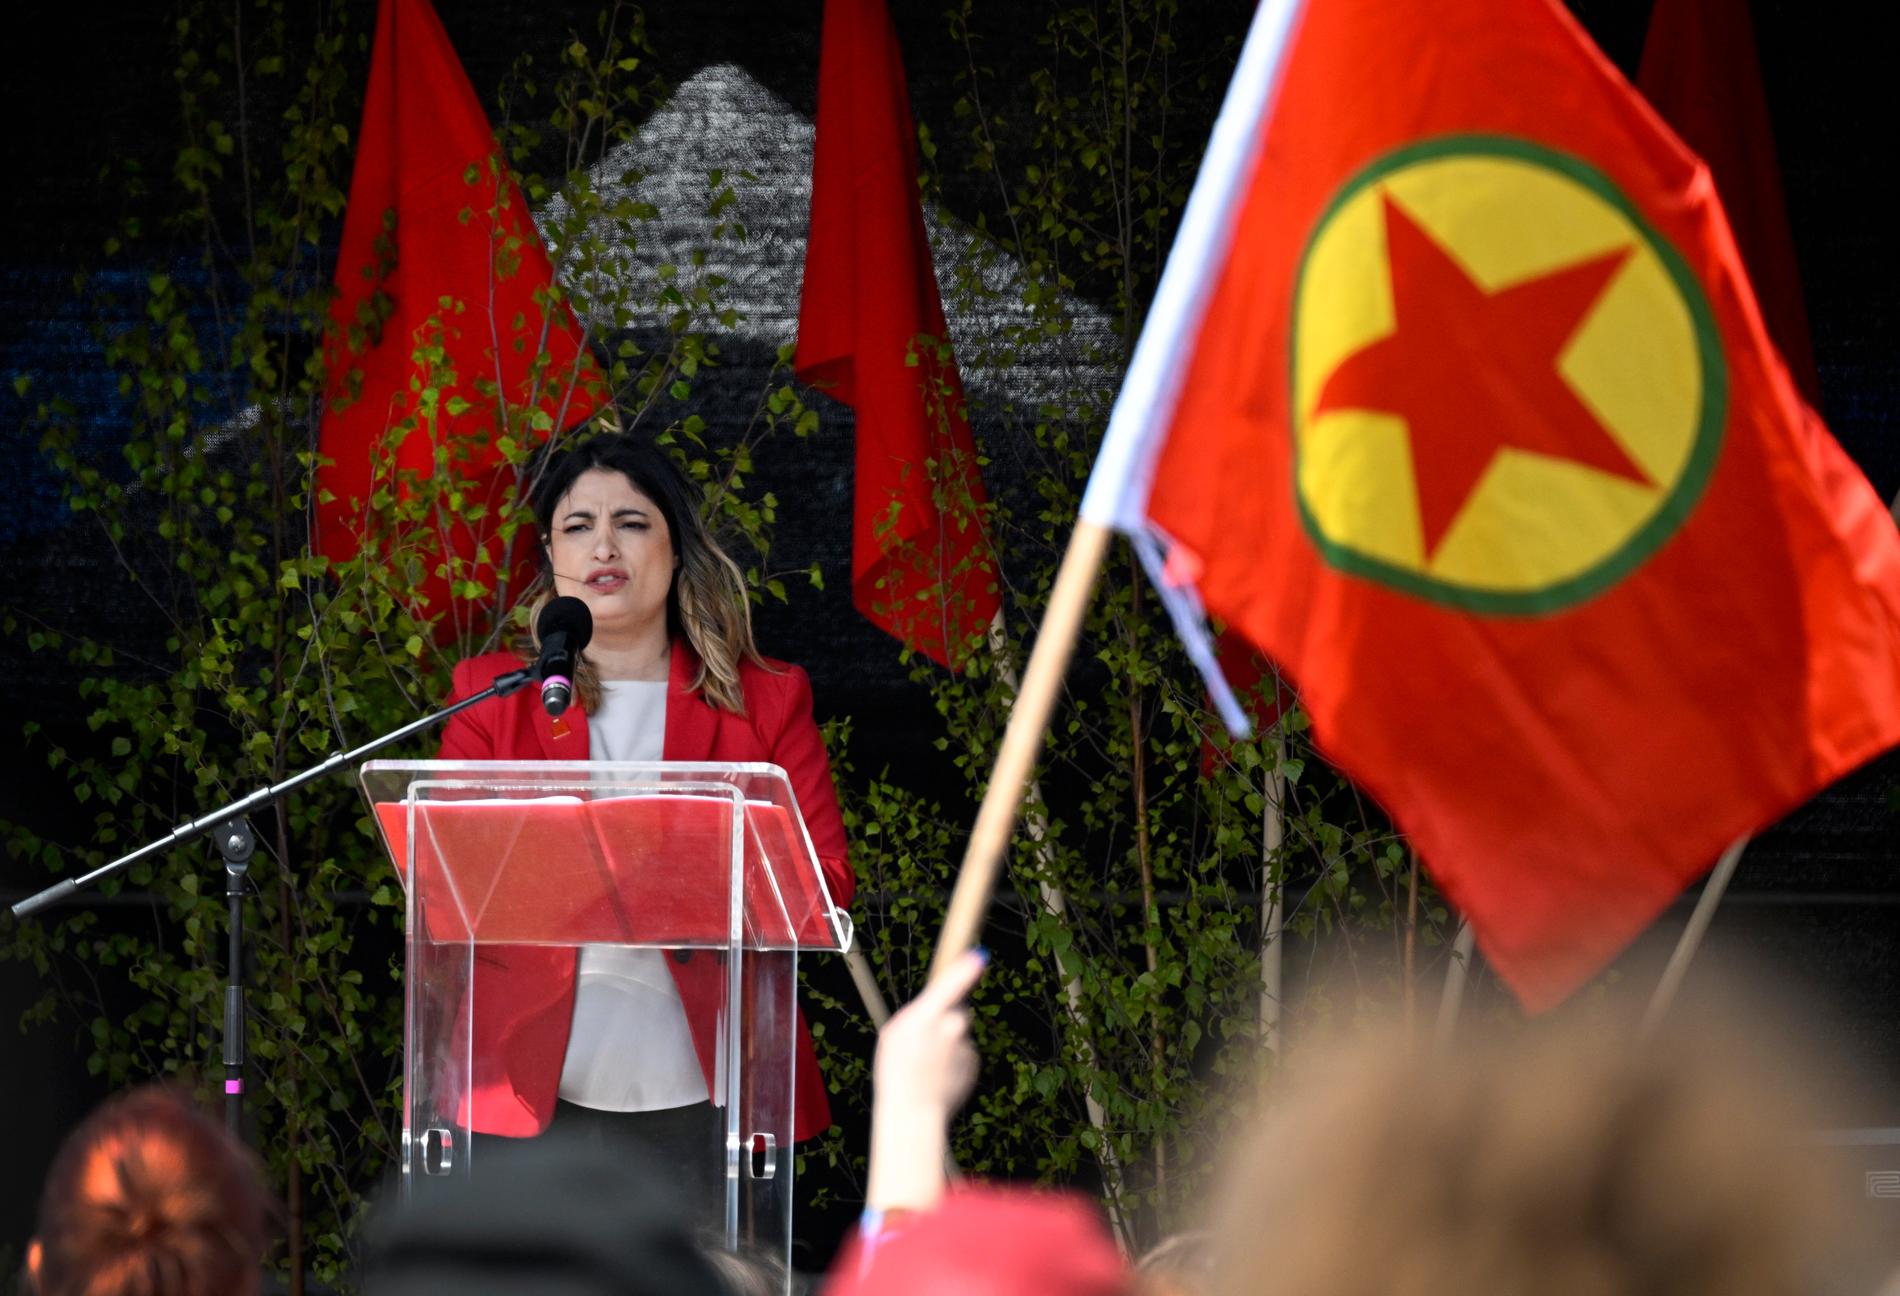 PKK:s flaggor när Vänsterpartiets partiledare Nooshi Dadgostar (V) talar i Slottsparken i Malmö på första maj under Arbetarrörelsens dag.